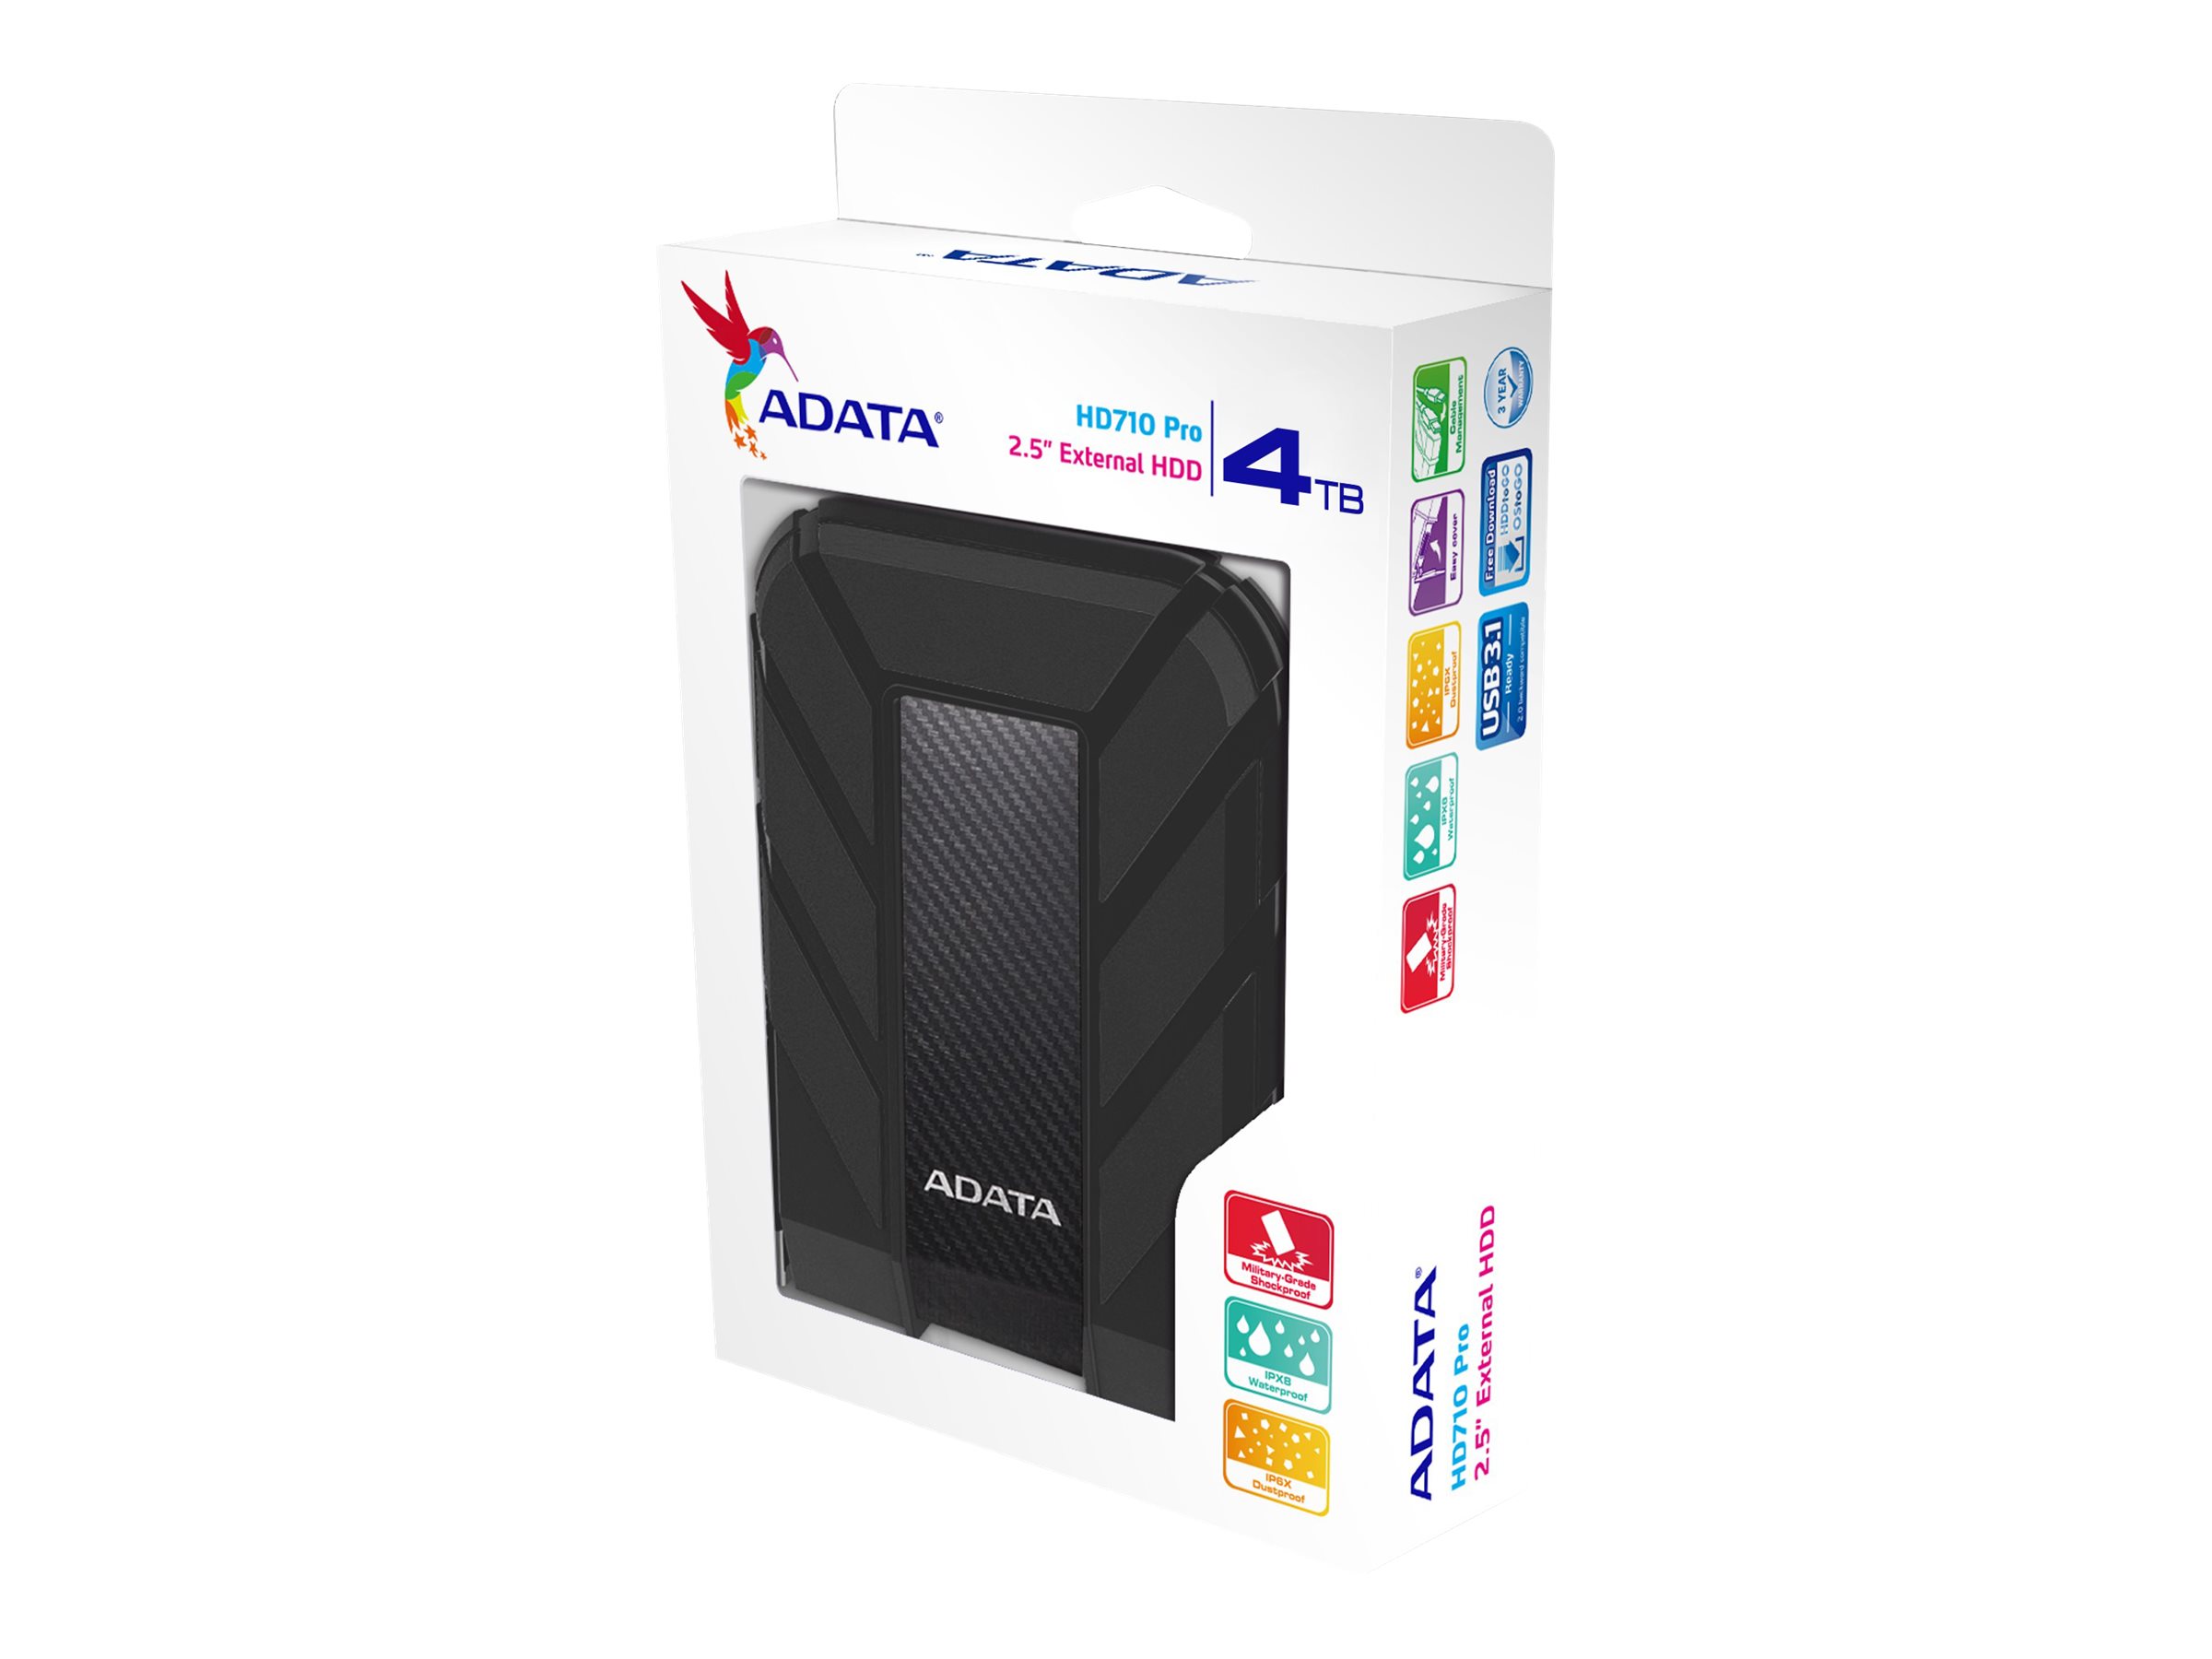 Dysk zewnętrzny ADATA HD710 Pro 4TB USB 3.1 Black